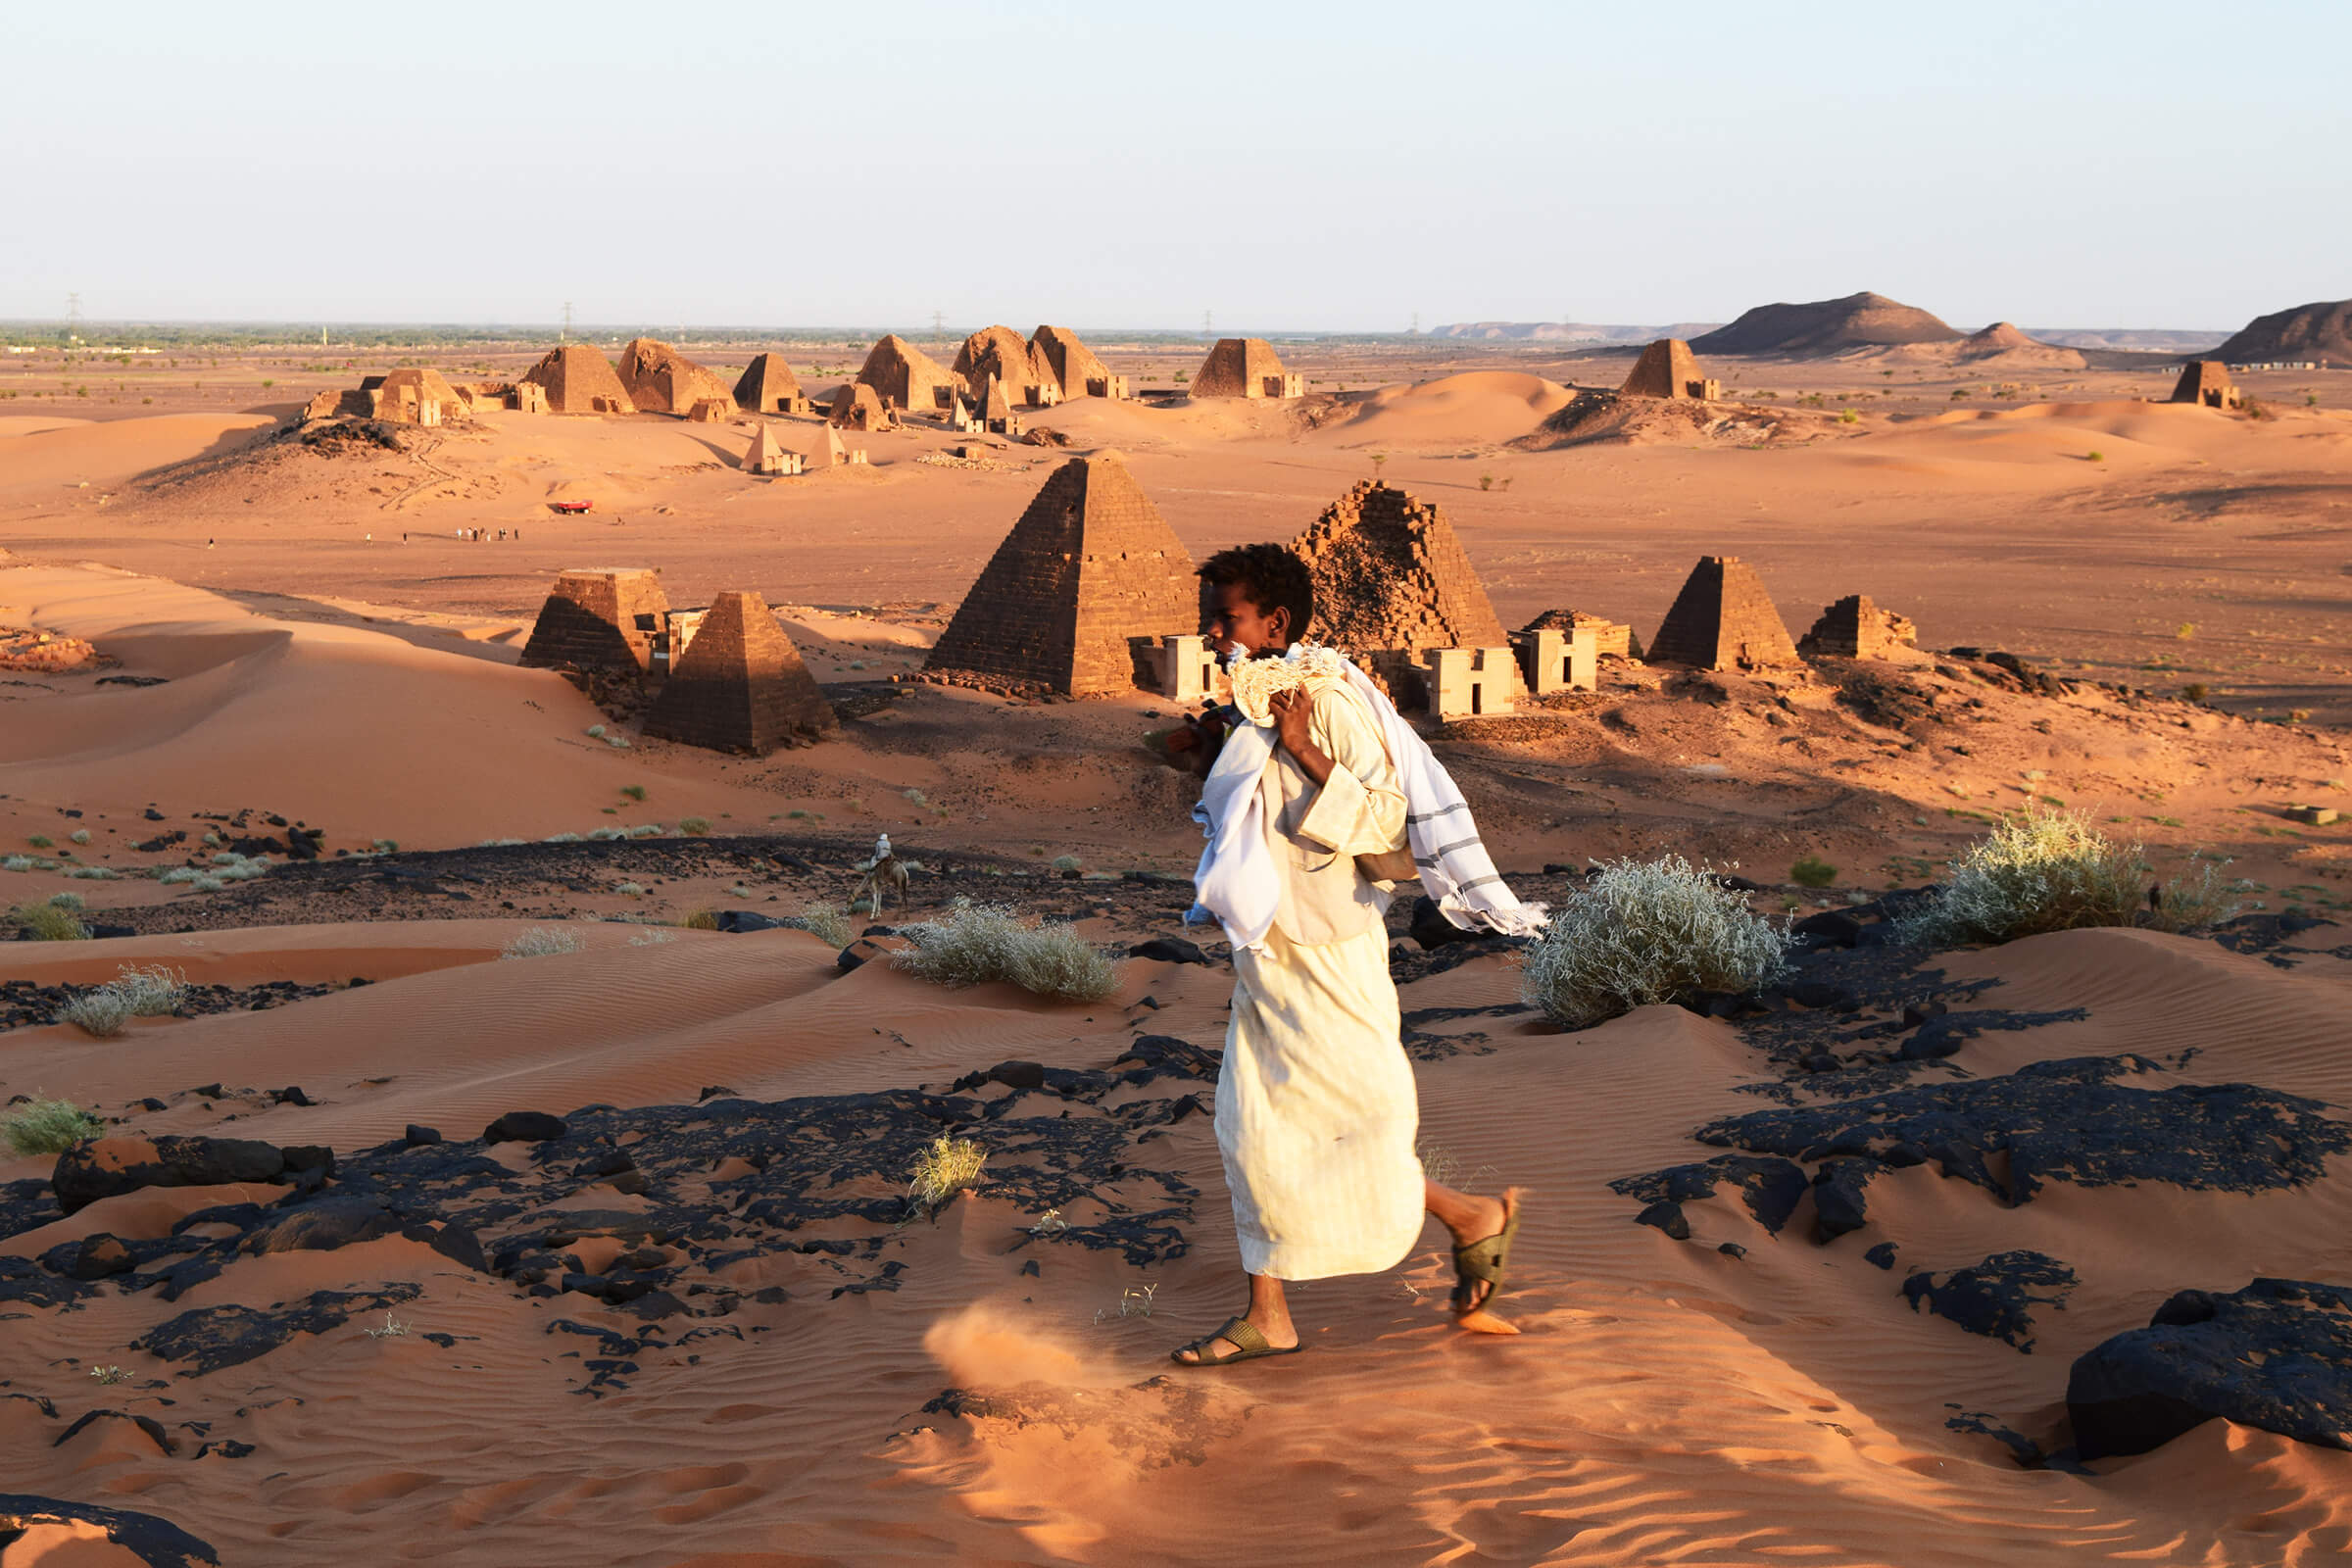 The Pyramids of Meroe, Sudan, at sunrise